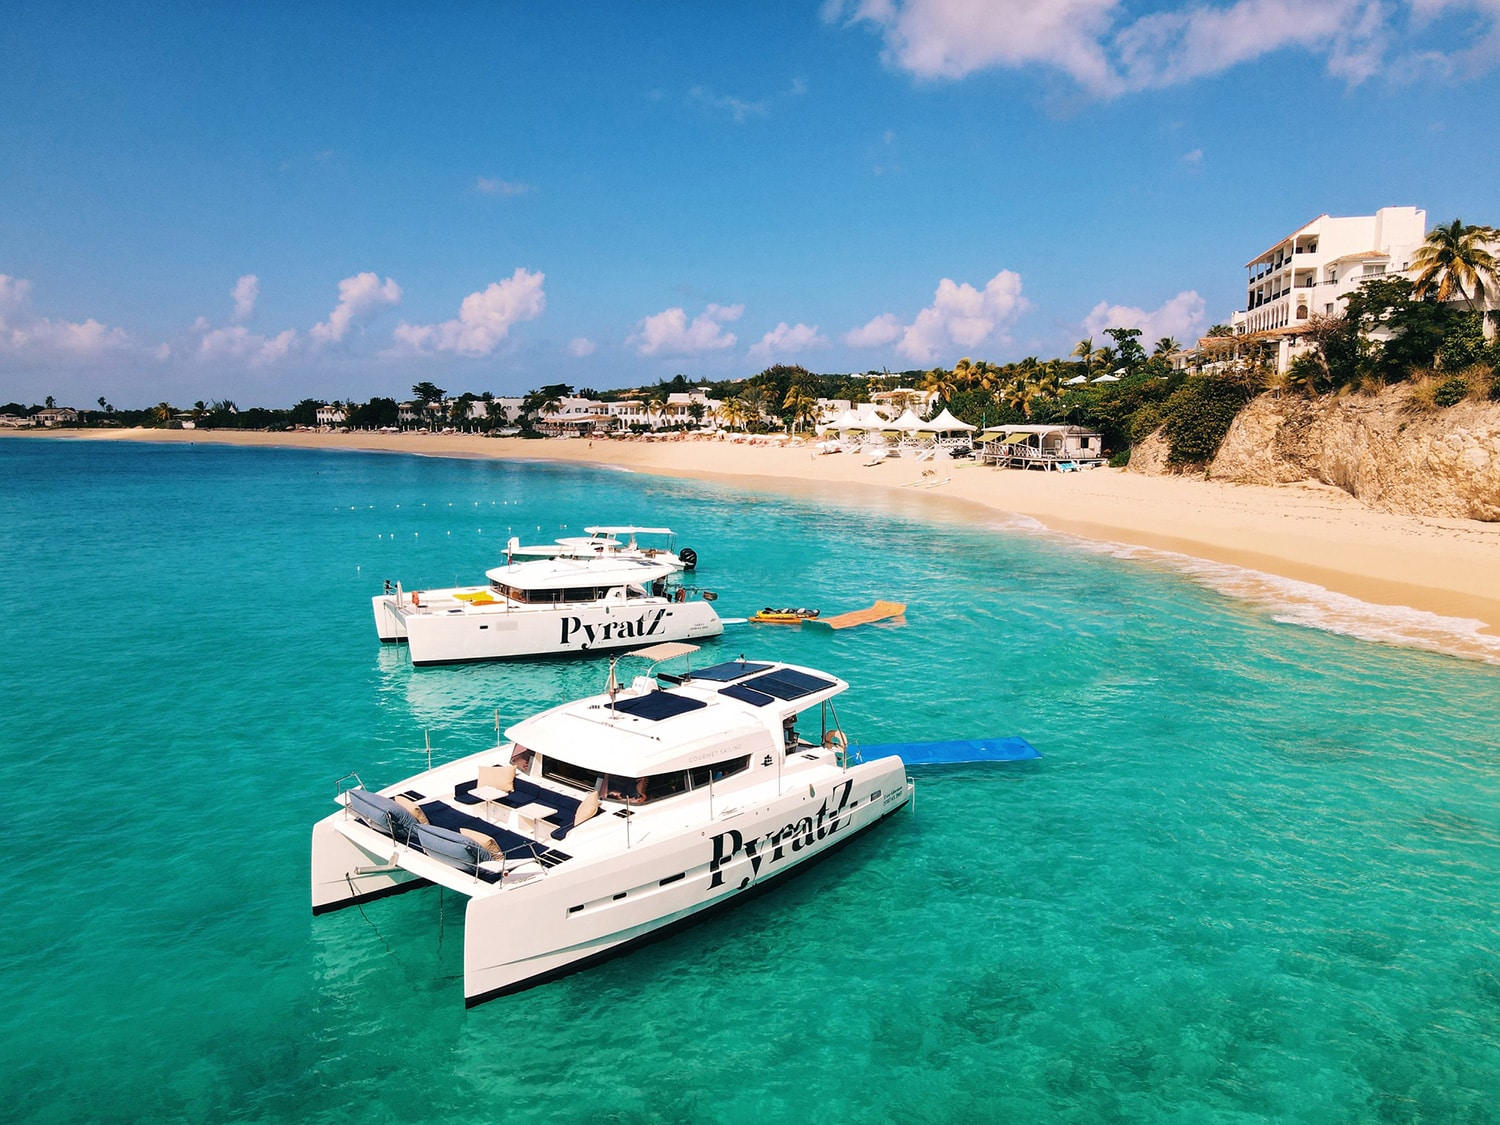 Pyratz gourmet catamaran cruise in St Maarten